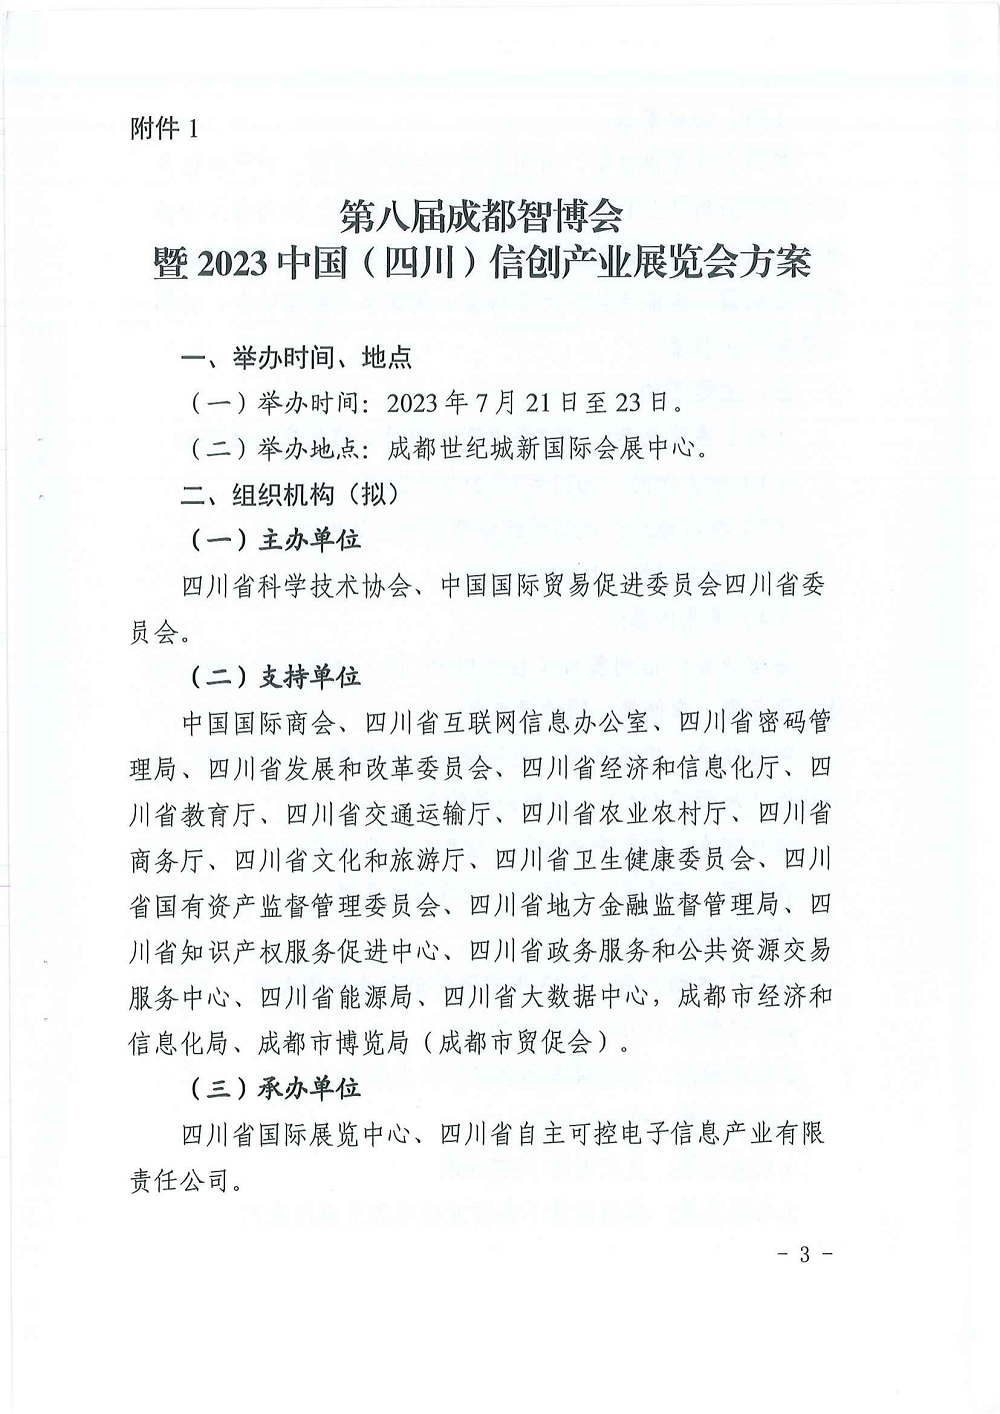 关于邀请参加第八届成都智博会暨2023年中国（四川）信创产业展览会的函_02.png